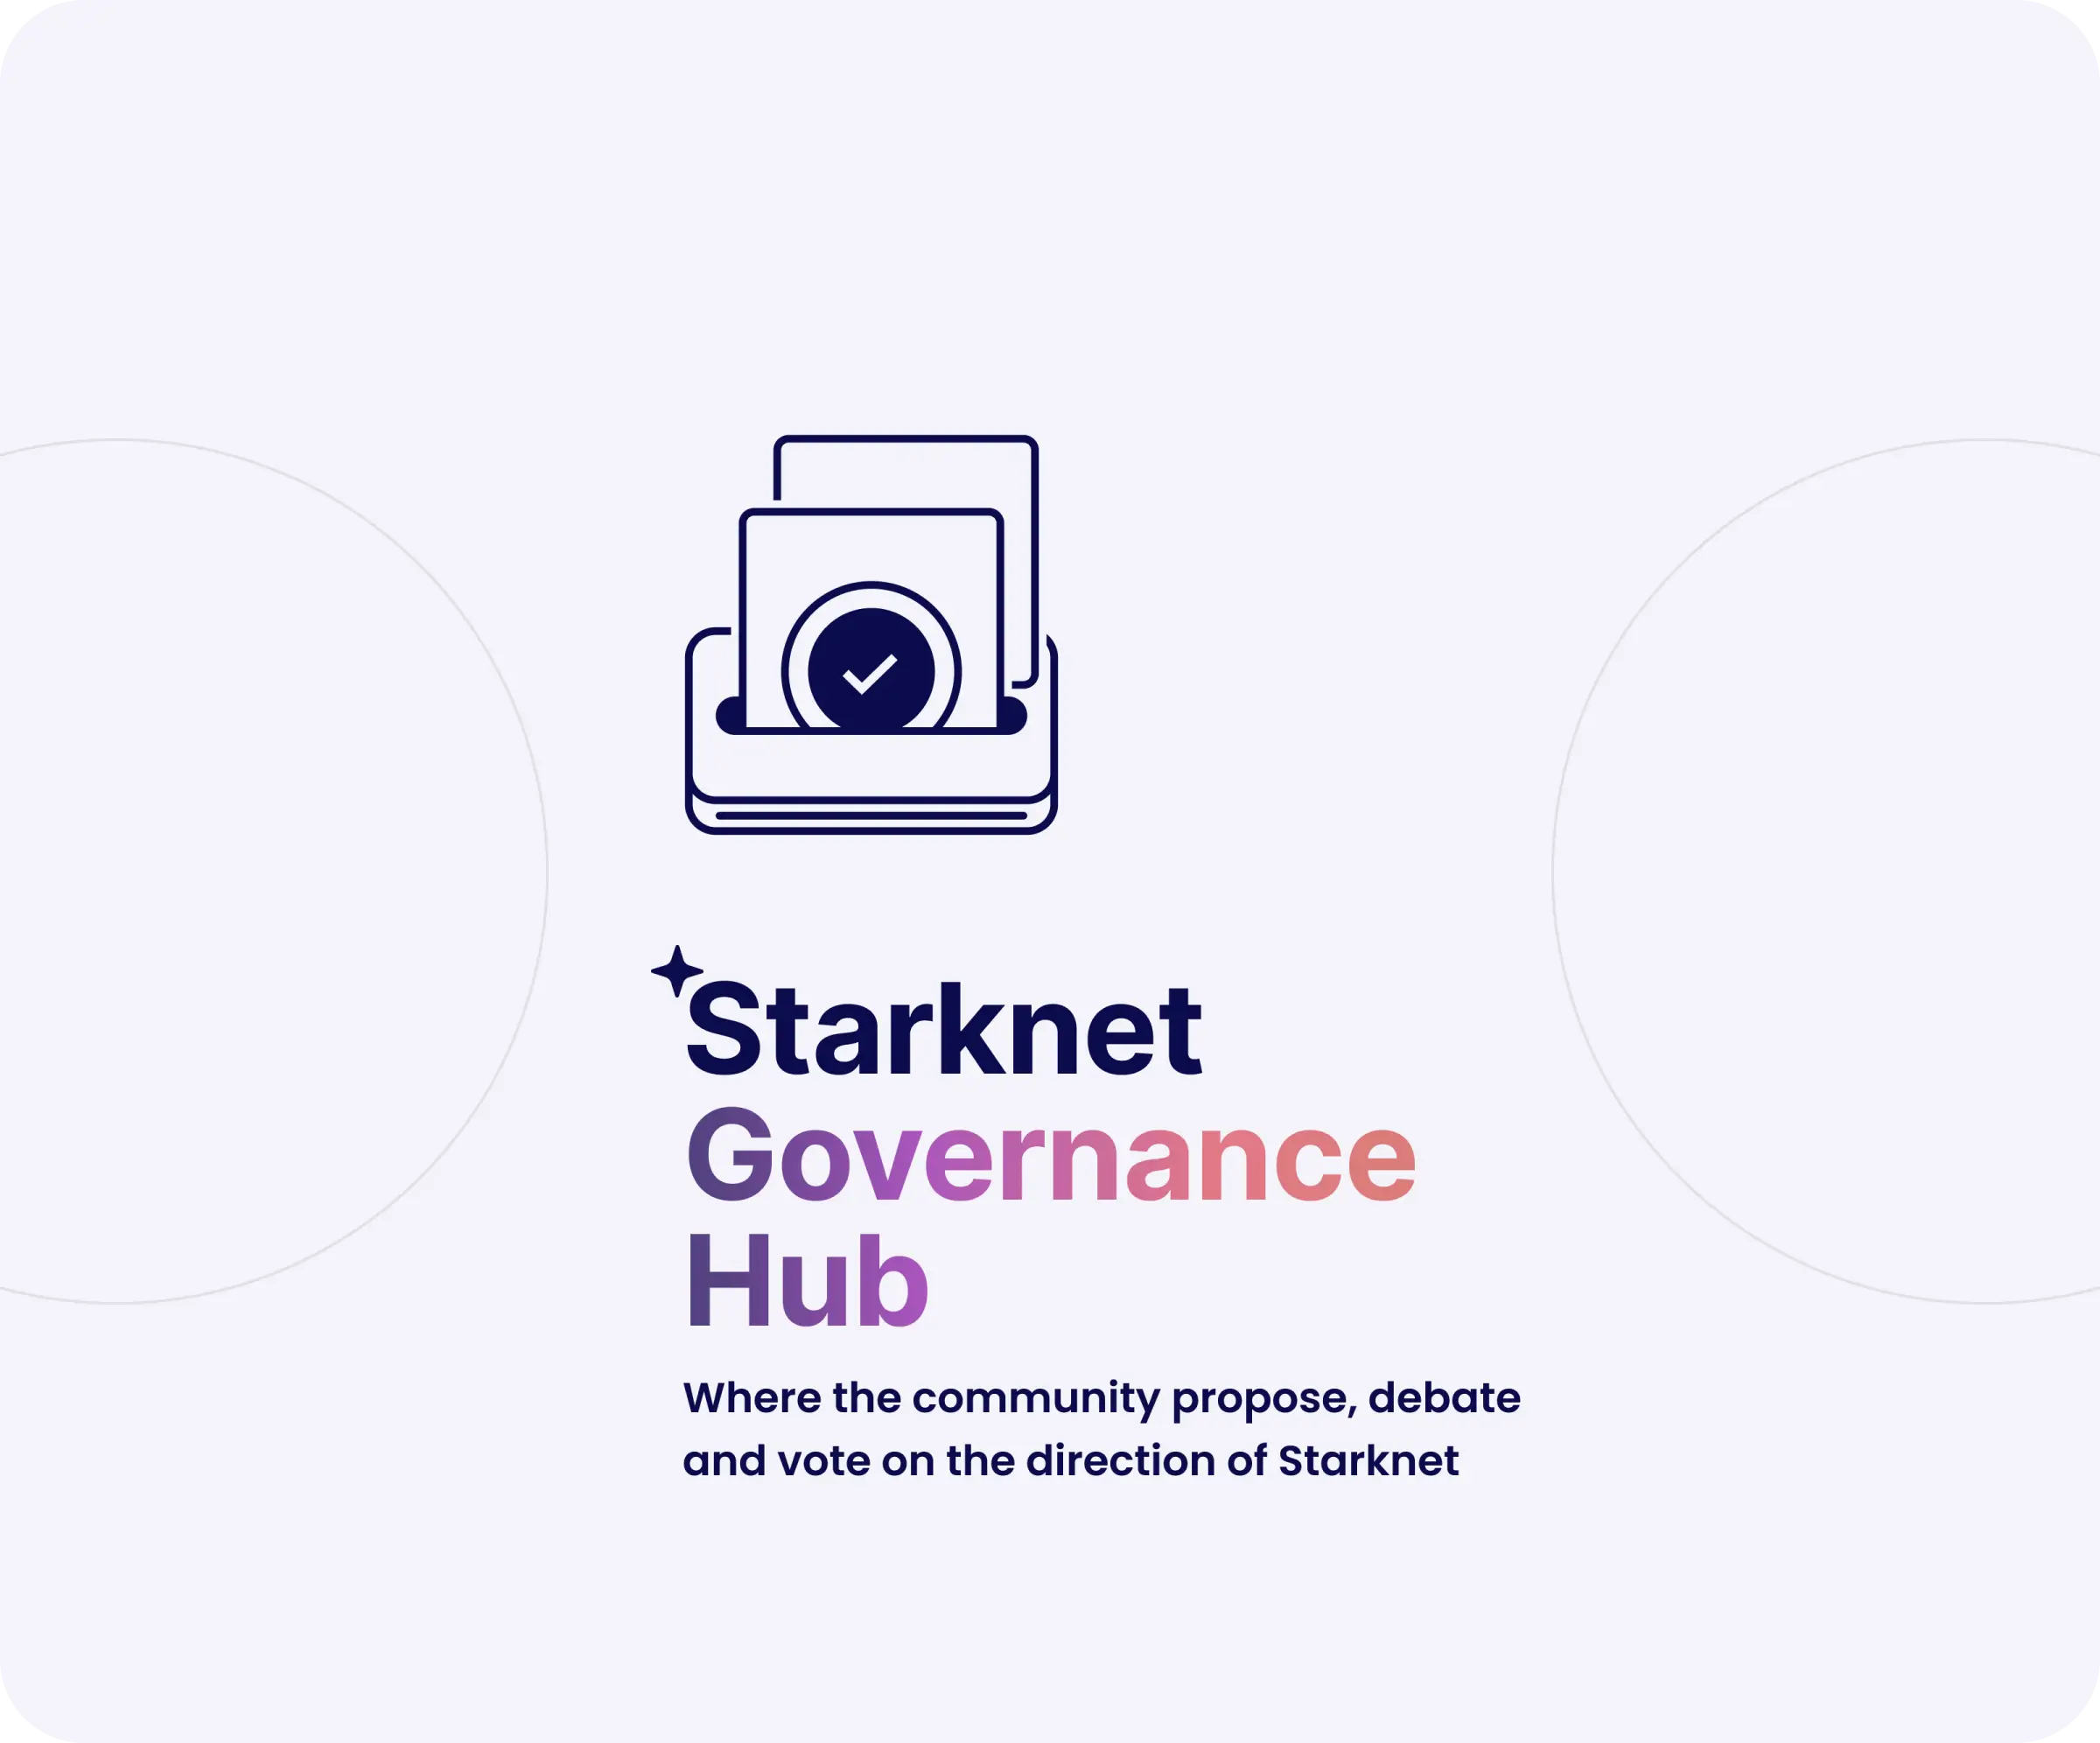 Starknet Governance Hub